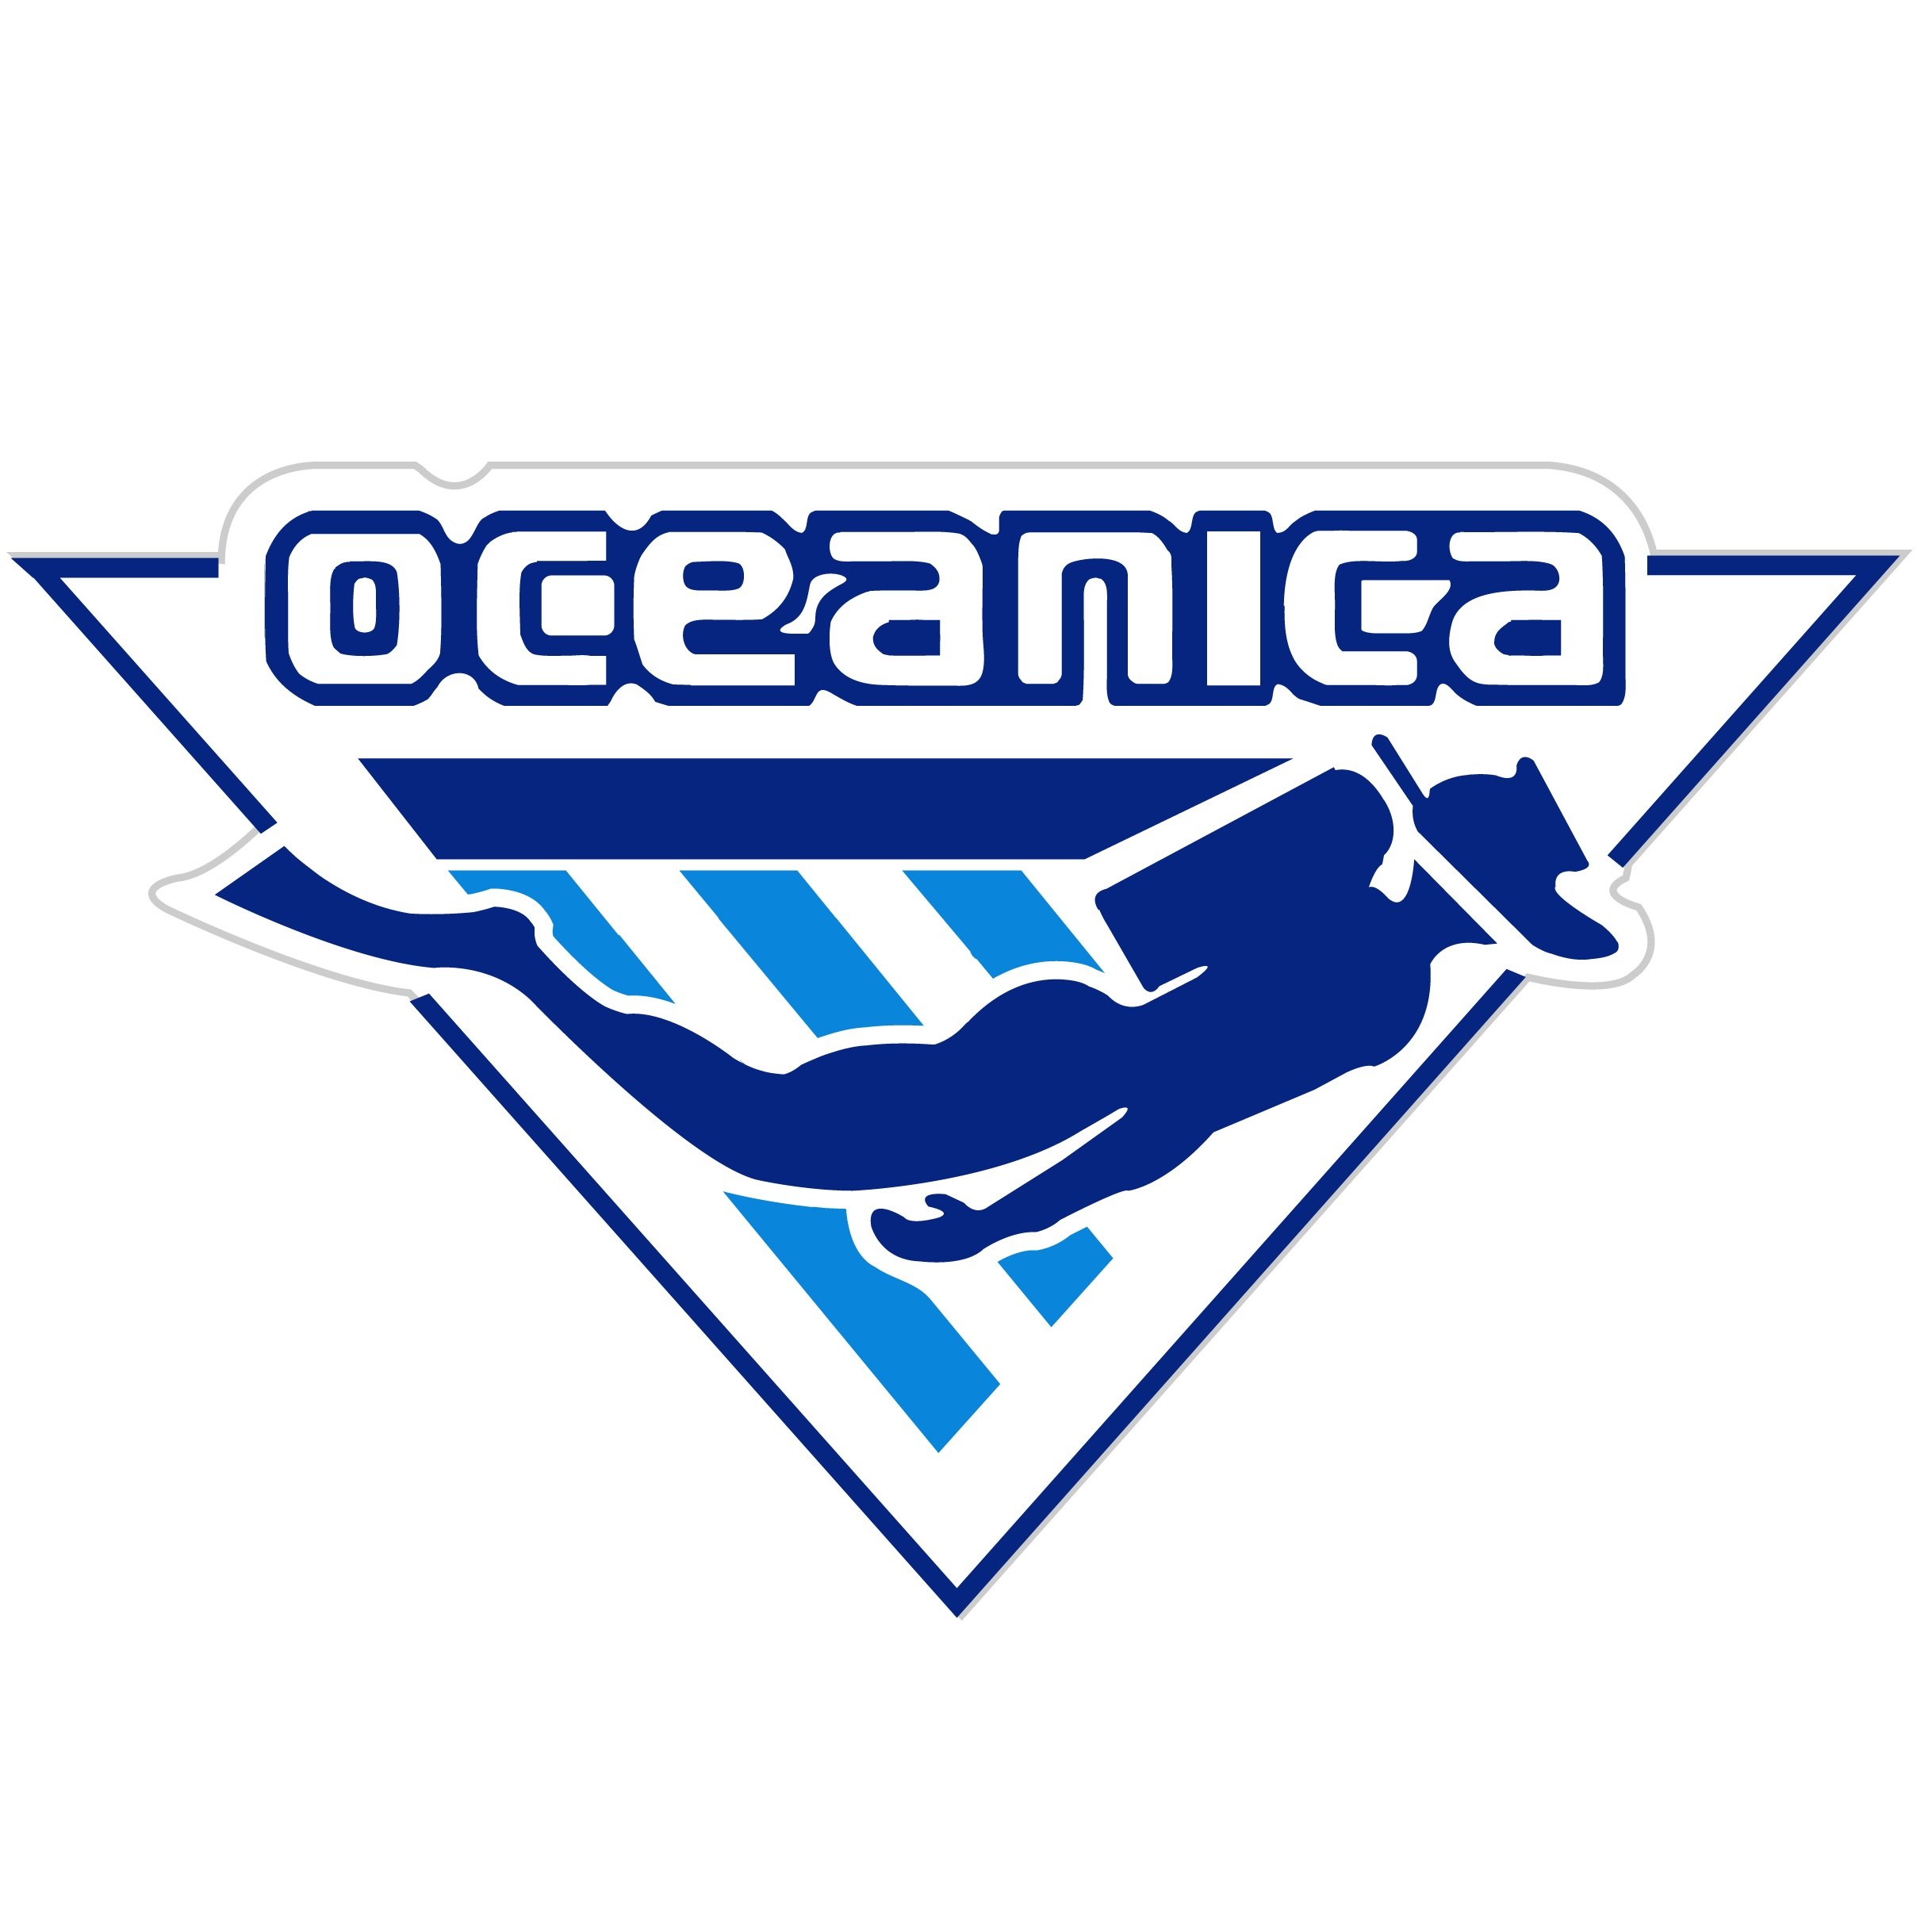 Logo Oceanica Original.jpg